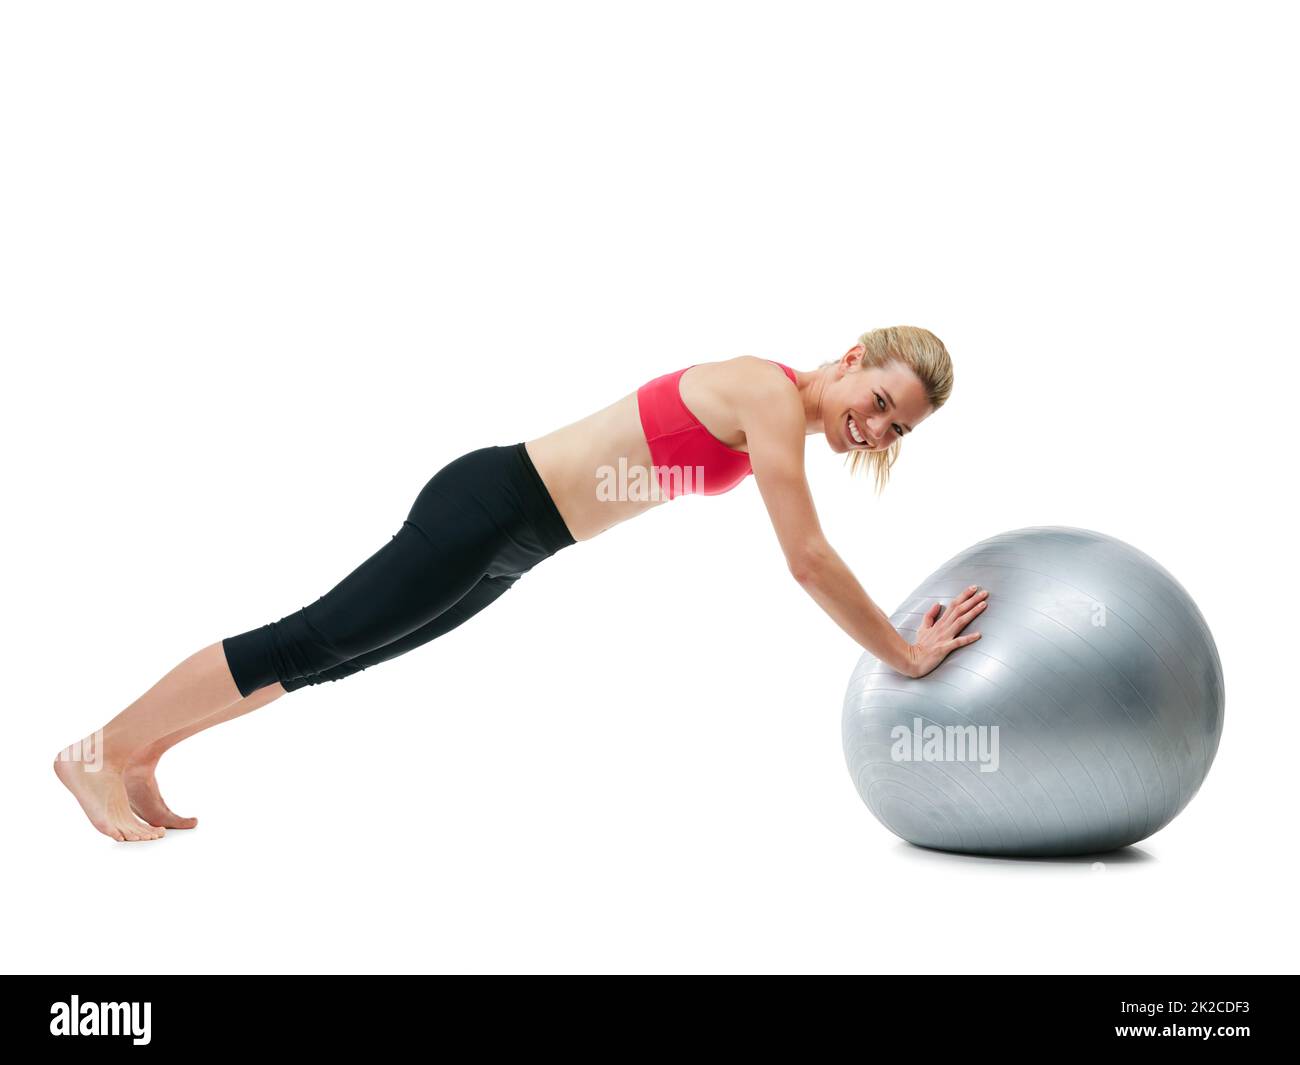 Aufgeben ist nicht in meinem Wortschatz. Studioaufnahme einer jungen Frau, die mit ihrem Übungsball trainiert. Stockfoto